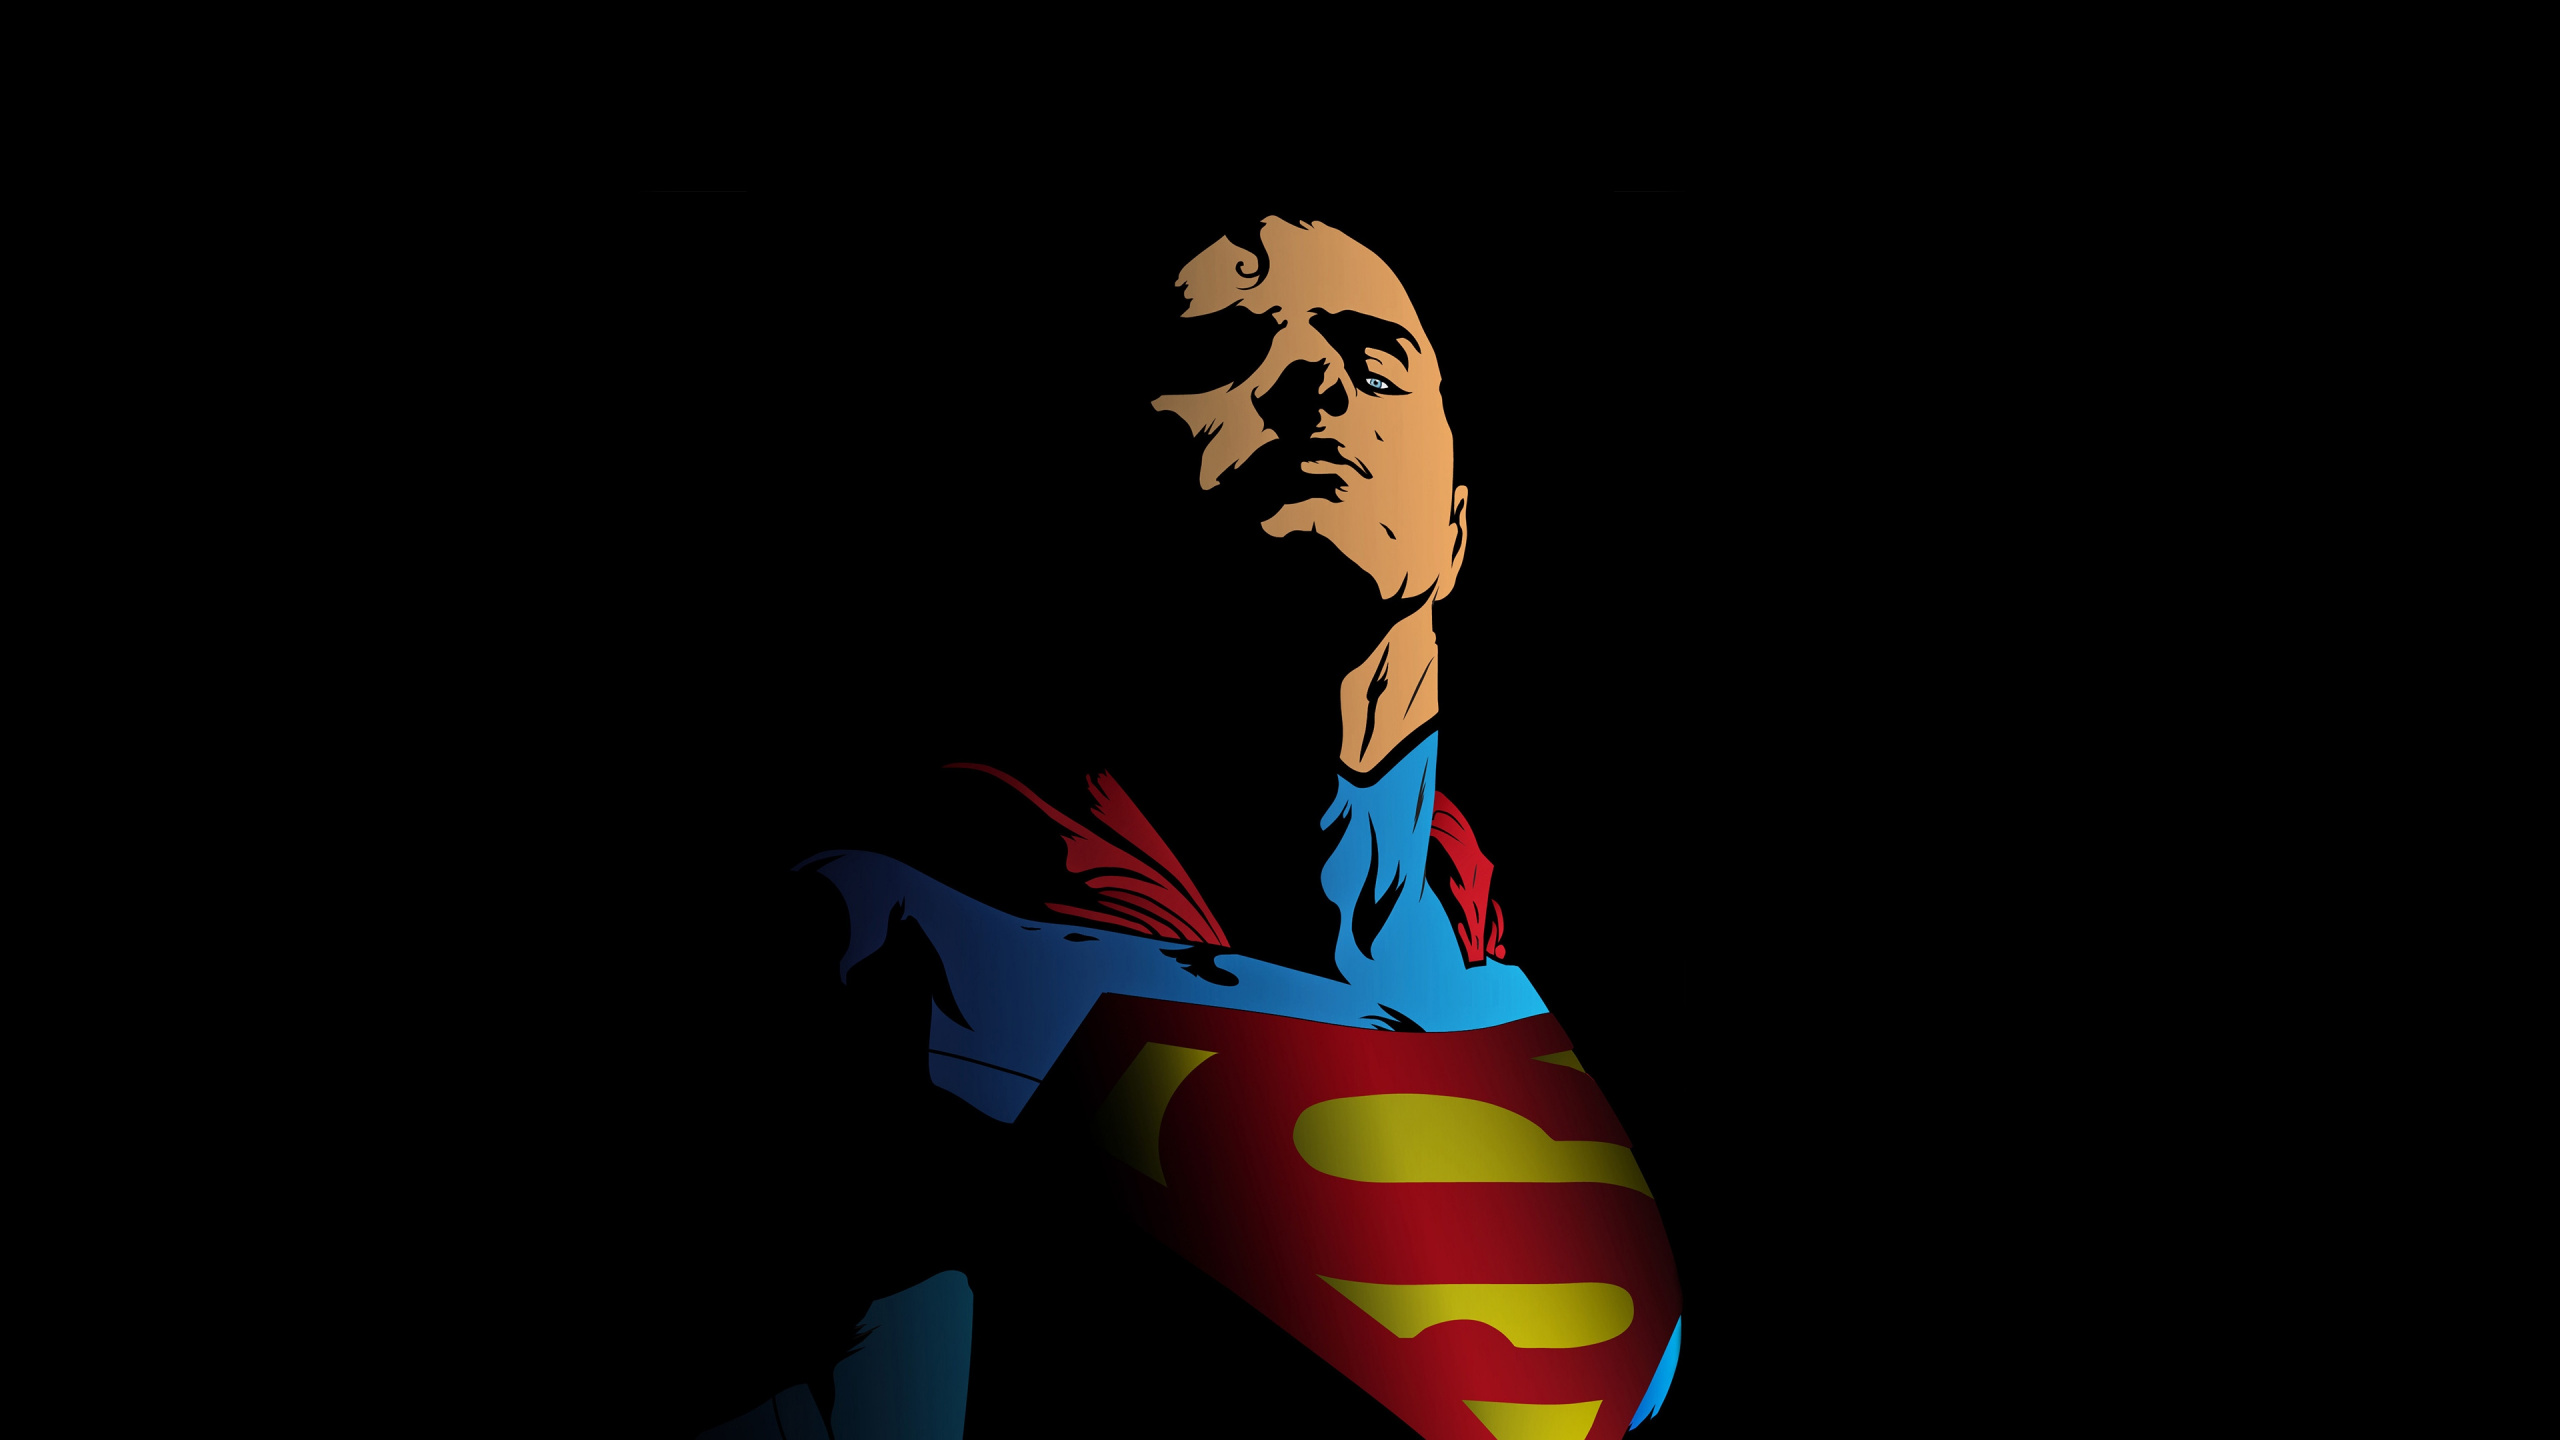 超级英雄, 艺术, 超人的标志, 虚构的人物, 创造性的艺术 壁纸 2560x1440 允许